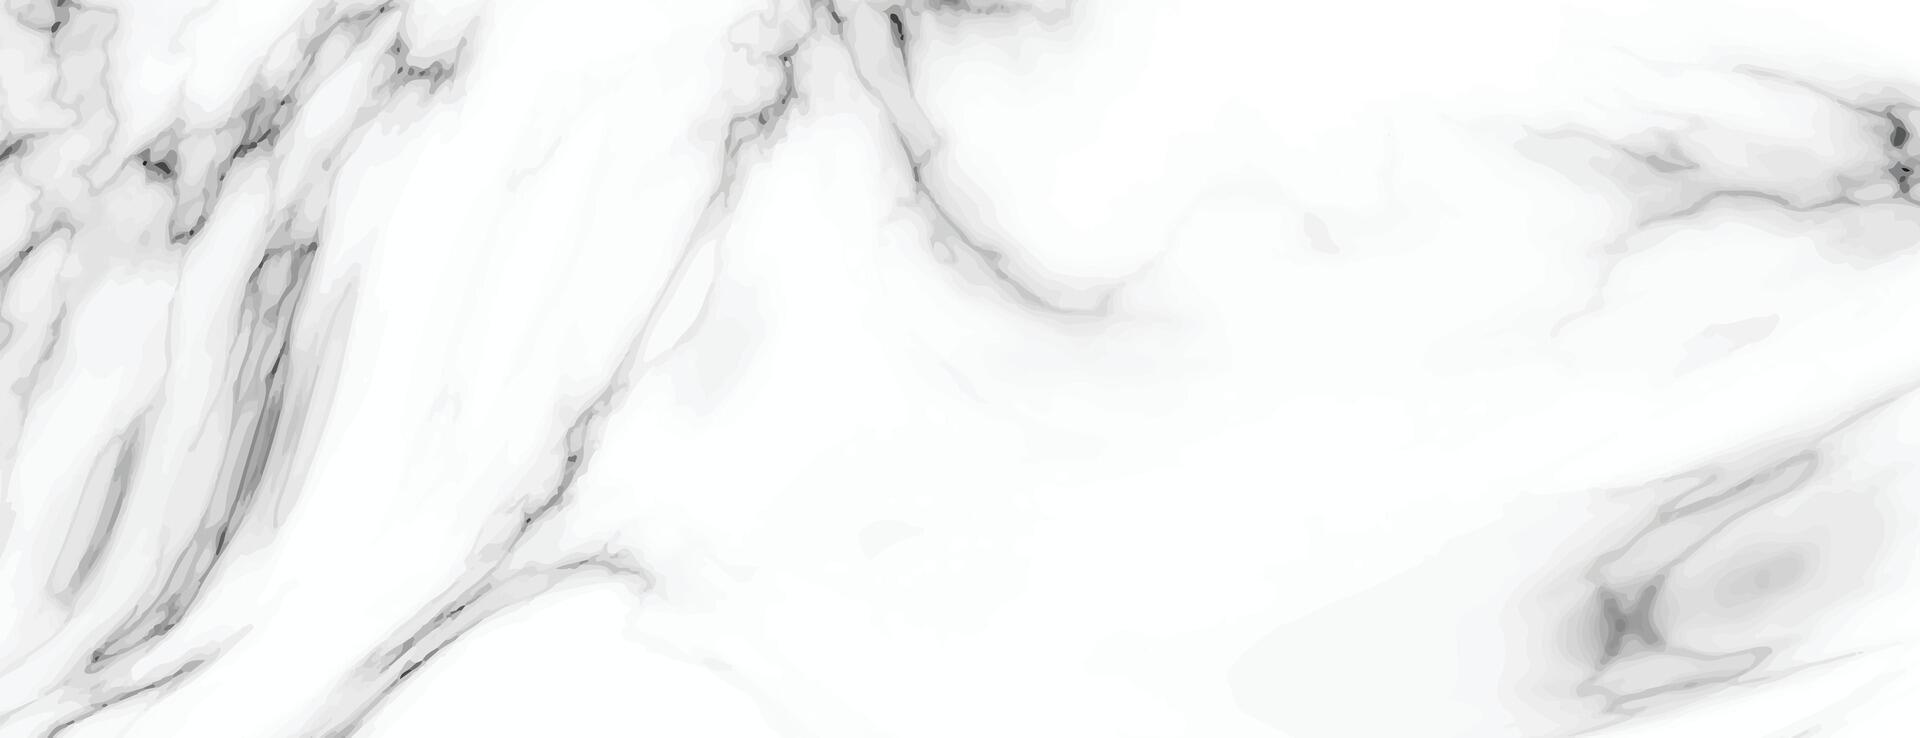 réaliste blanc et gris marbre texture fond d'écran pour mur ou sol surface vecteur